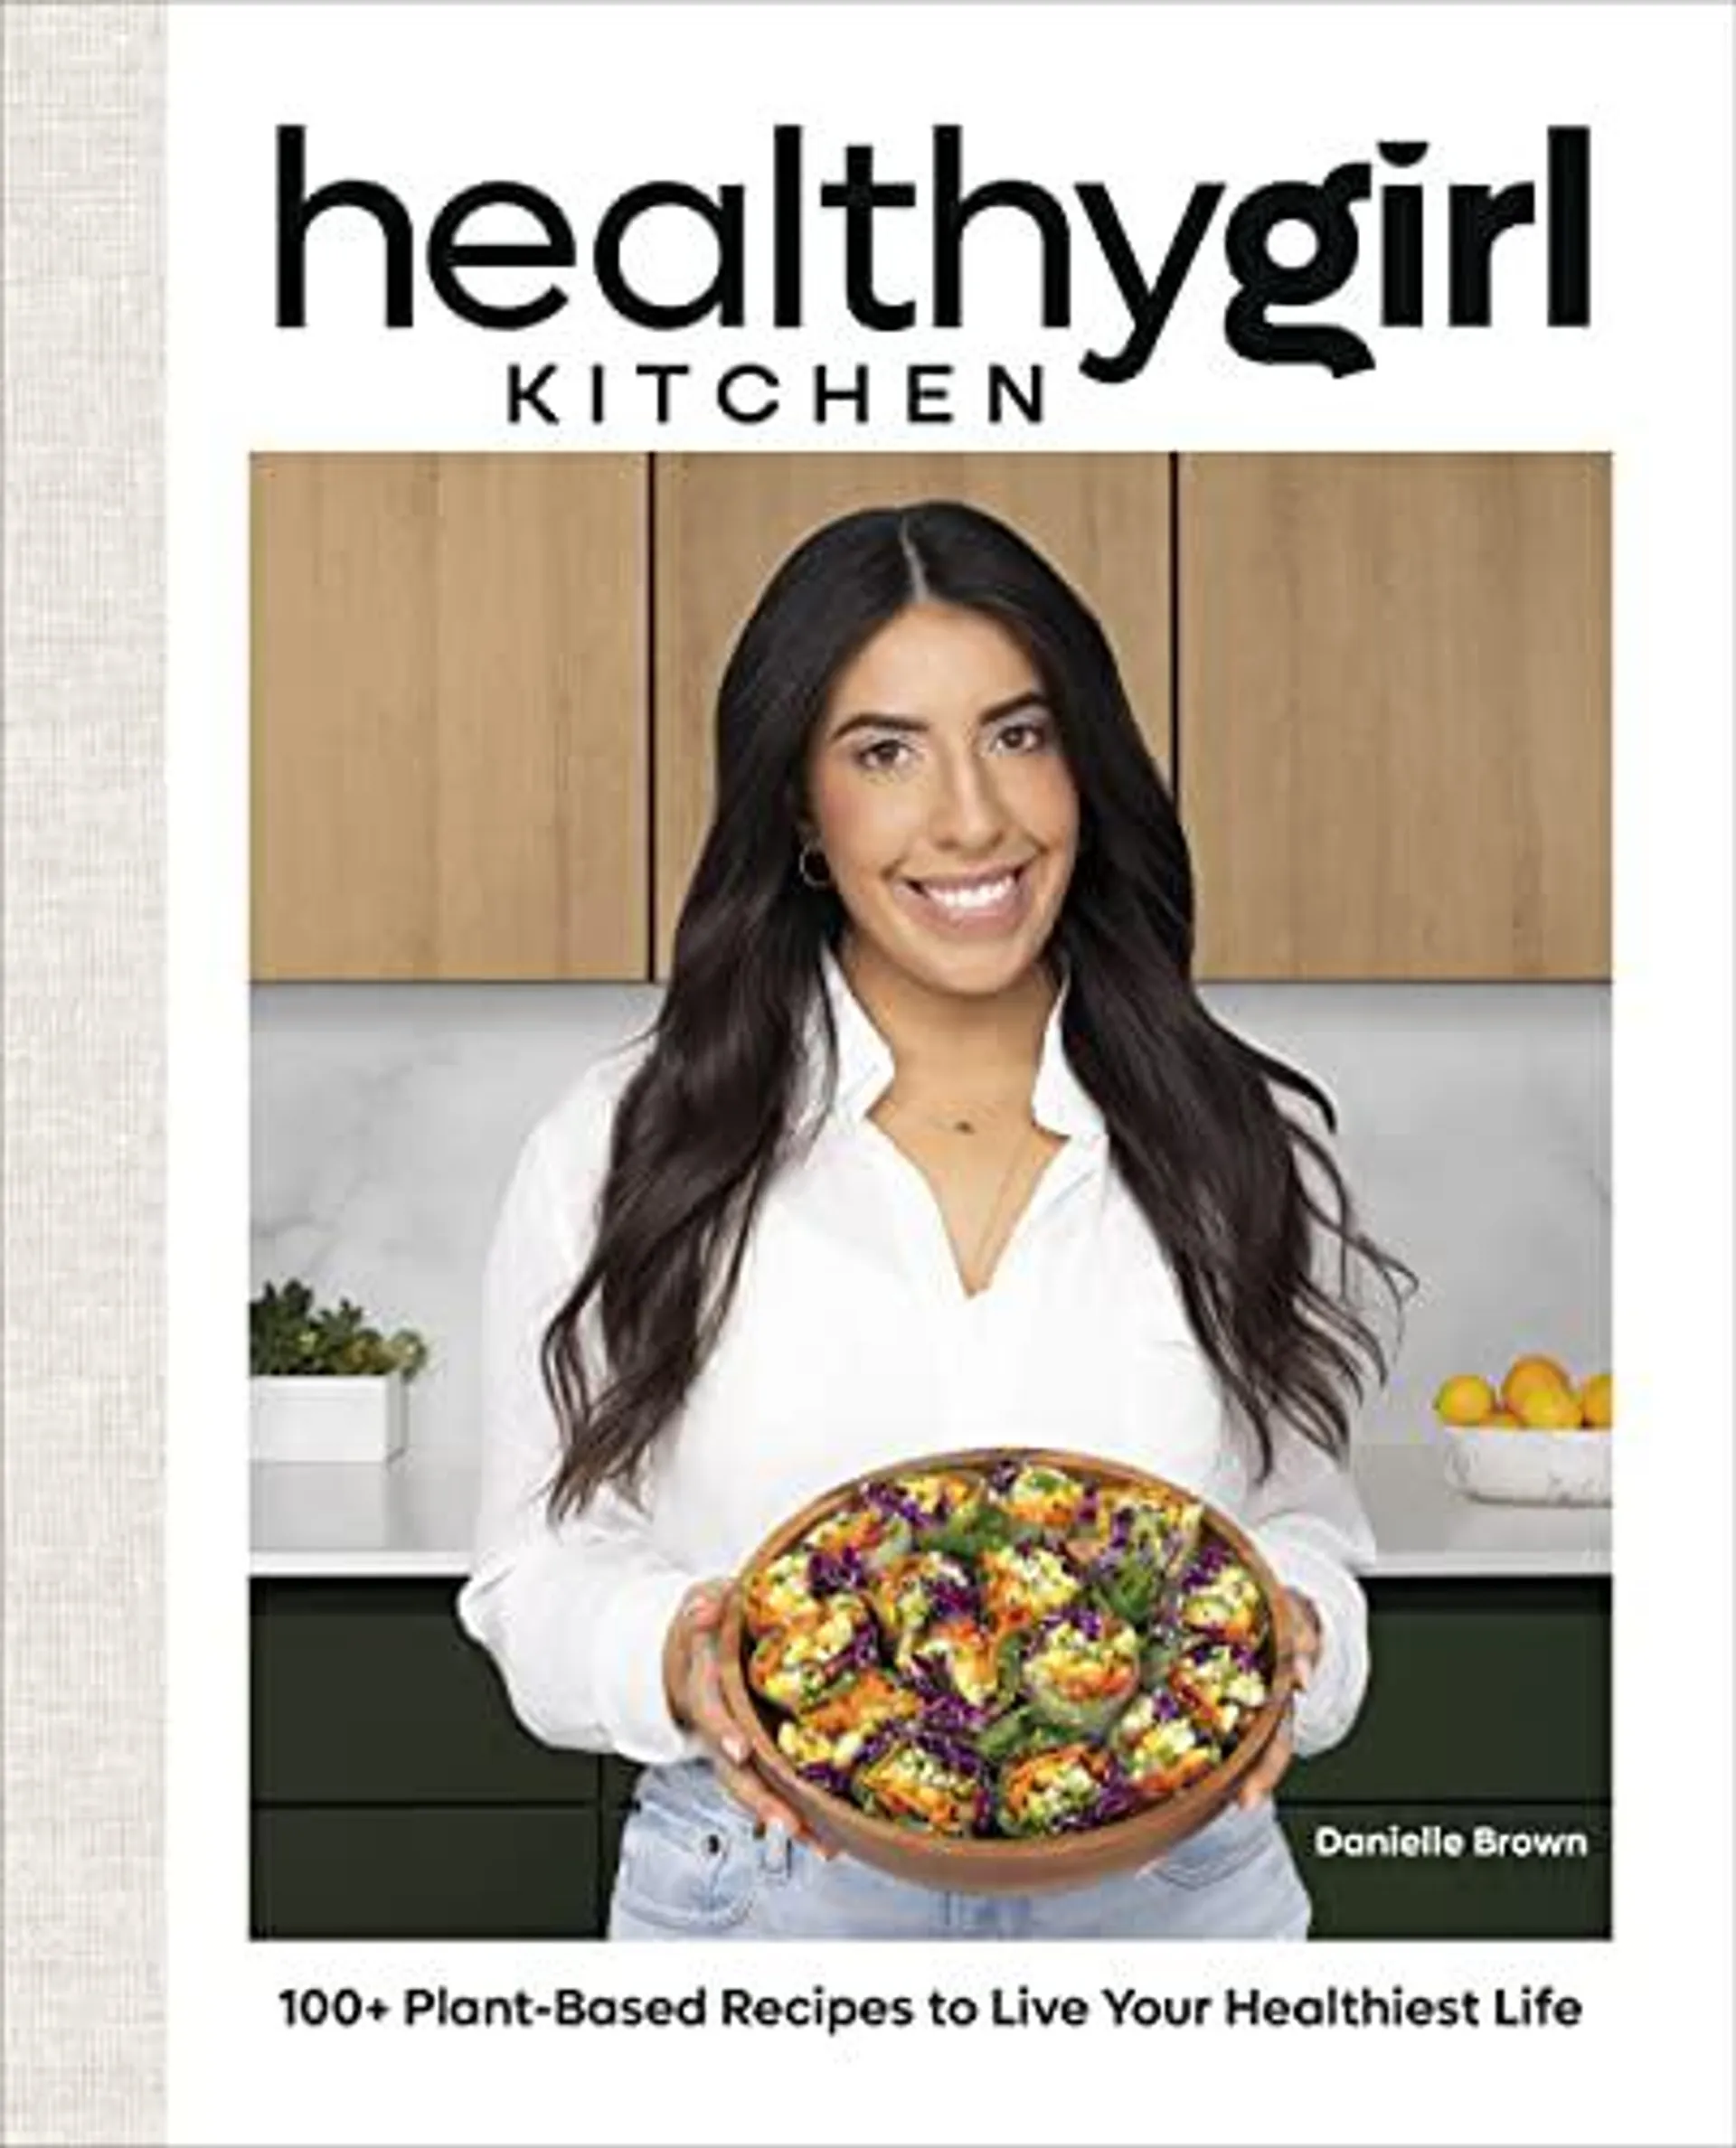 HealthyGirl Kitchen by Danielle Brown